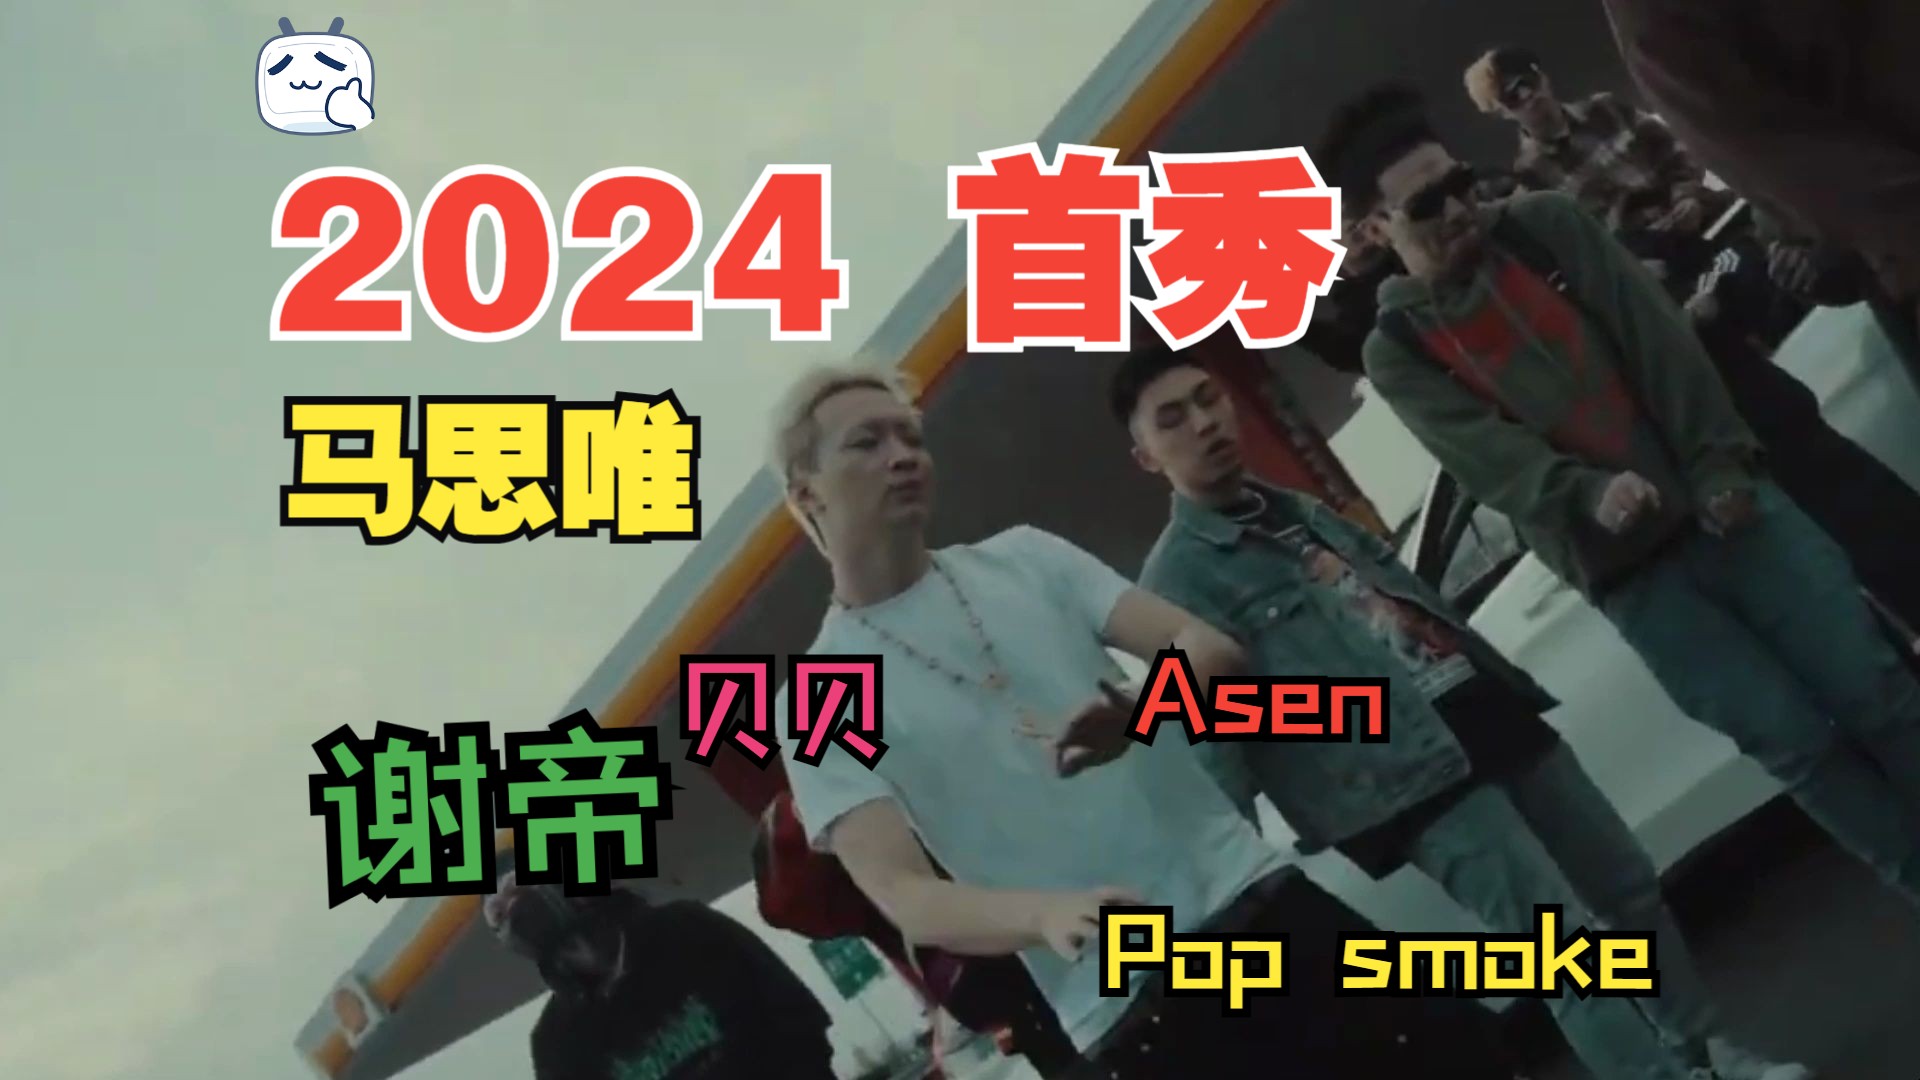 贝贝-2 chain（Impreza Remix） Ft.马思唯，Asen，谢帝，Pop Smoke【Mix & MV by 胶泥长虫】